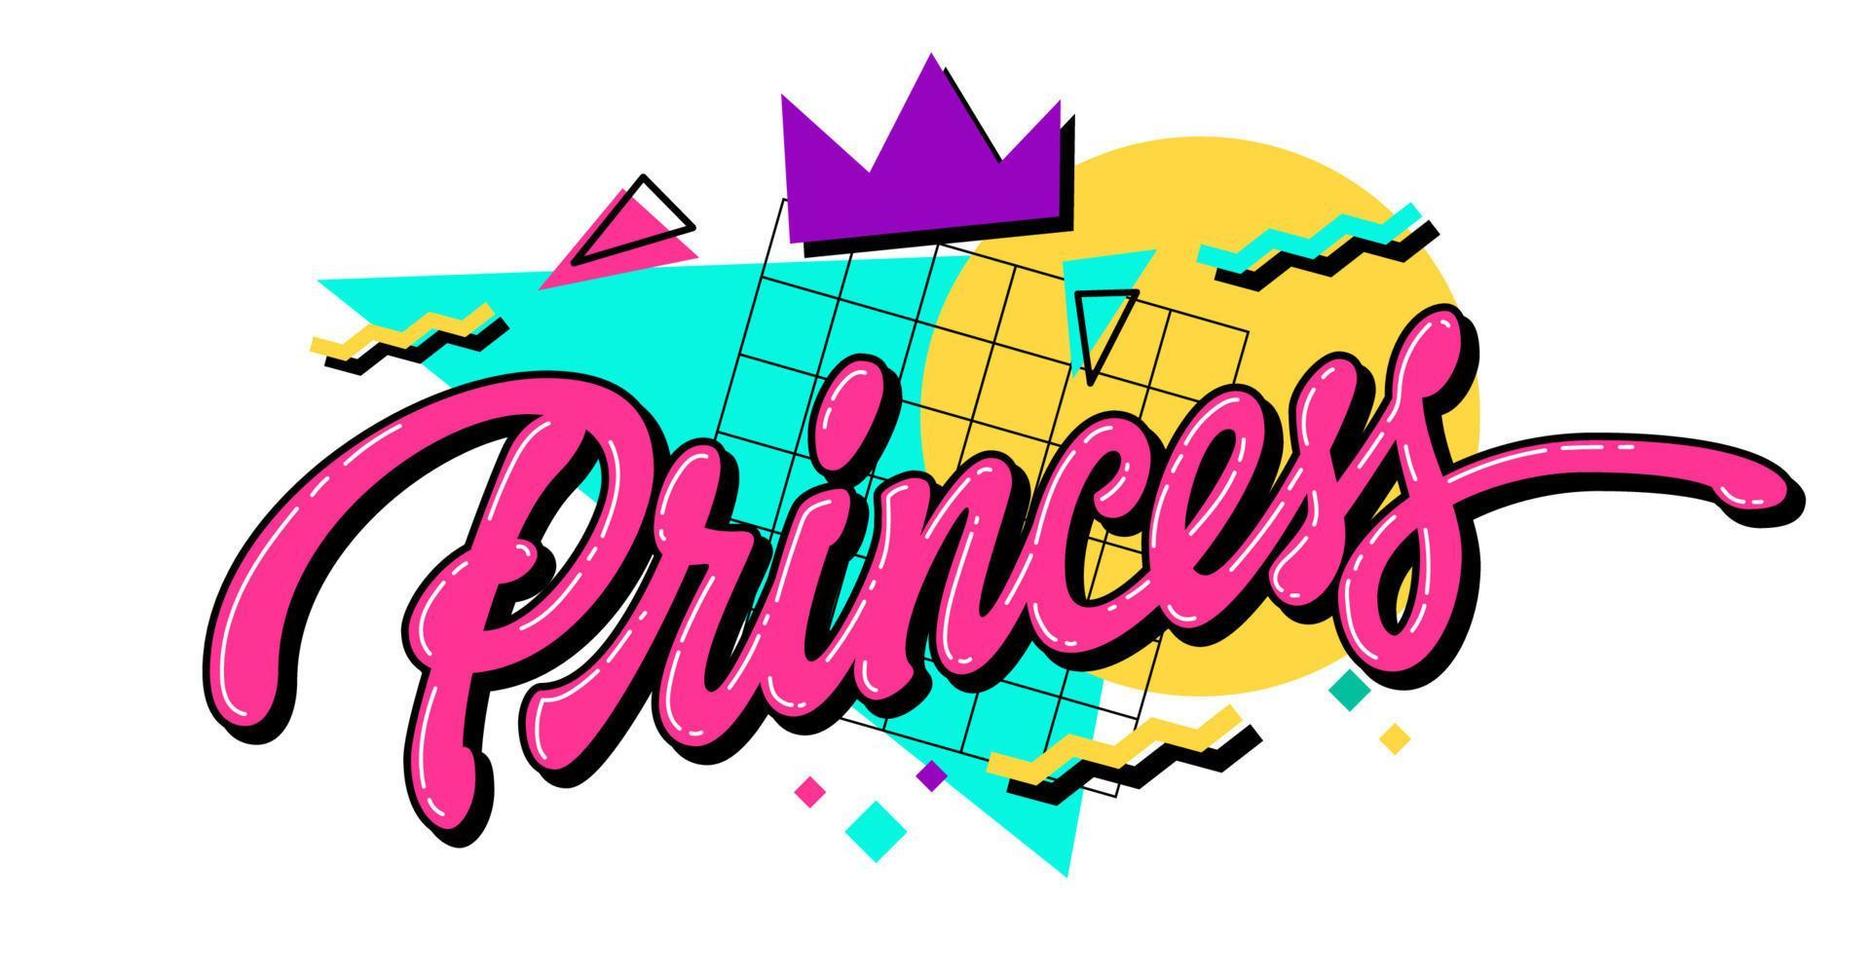 prinsessa - är en 90-talsinspirerad calligraphic text bild med djärv, ljus färger och kontrasterande geometrisk former i de bakgrund. isolerat vektor typografi design. perfekt för en 90s fest evenemang